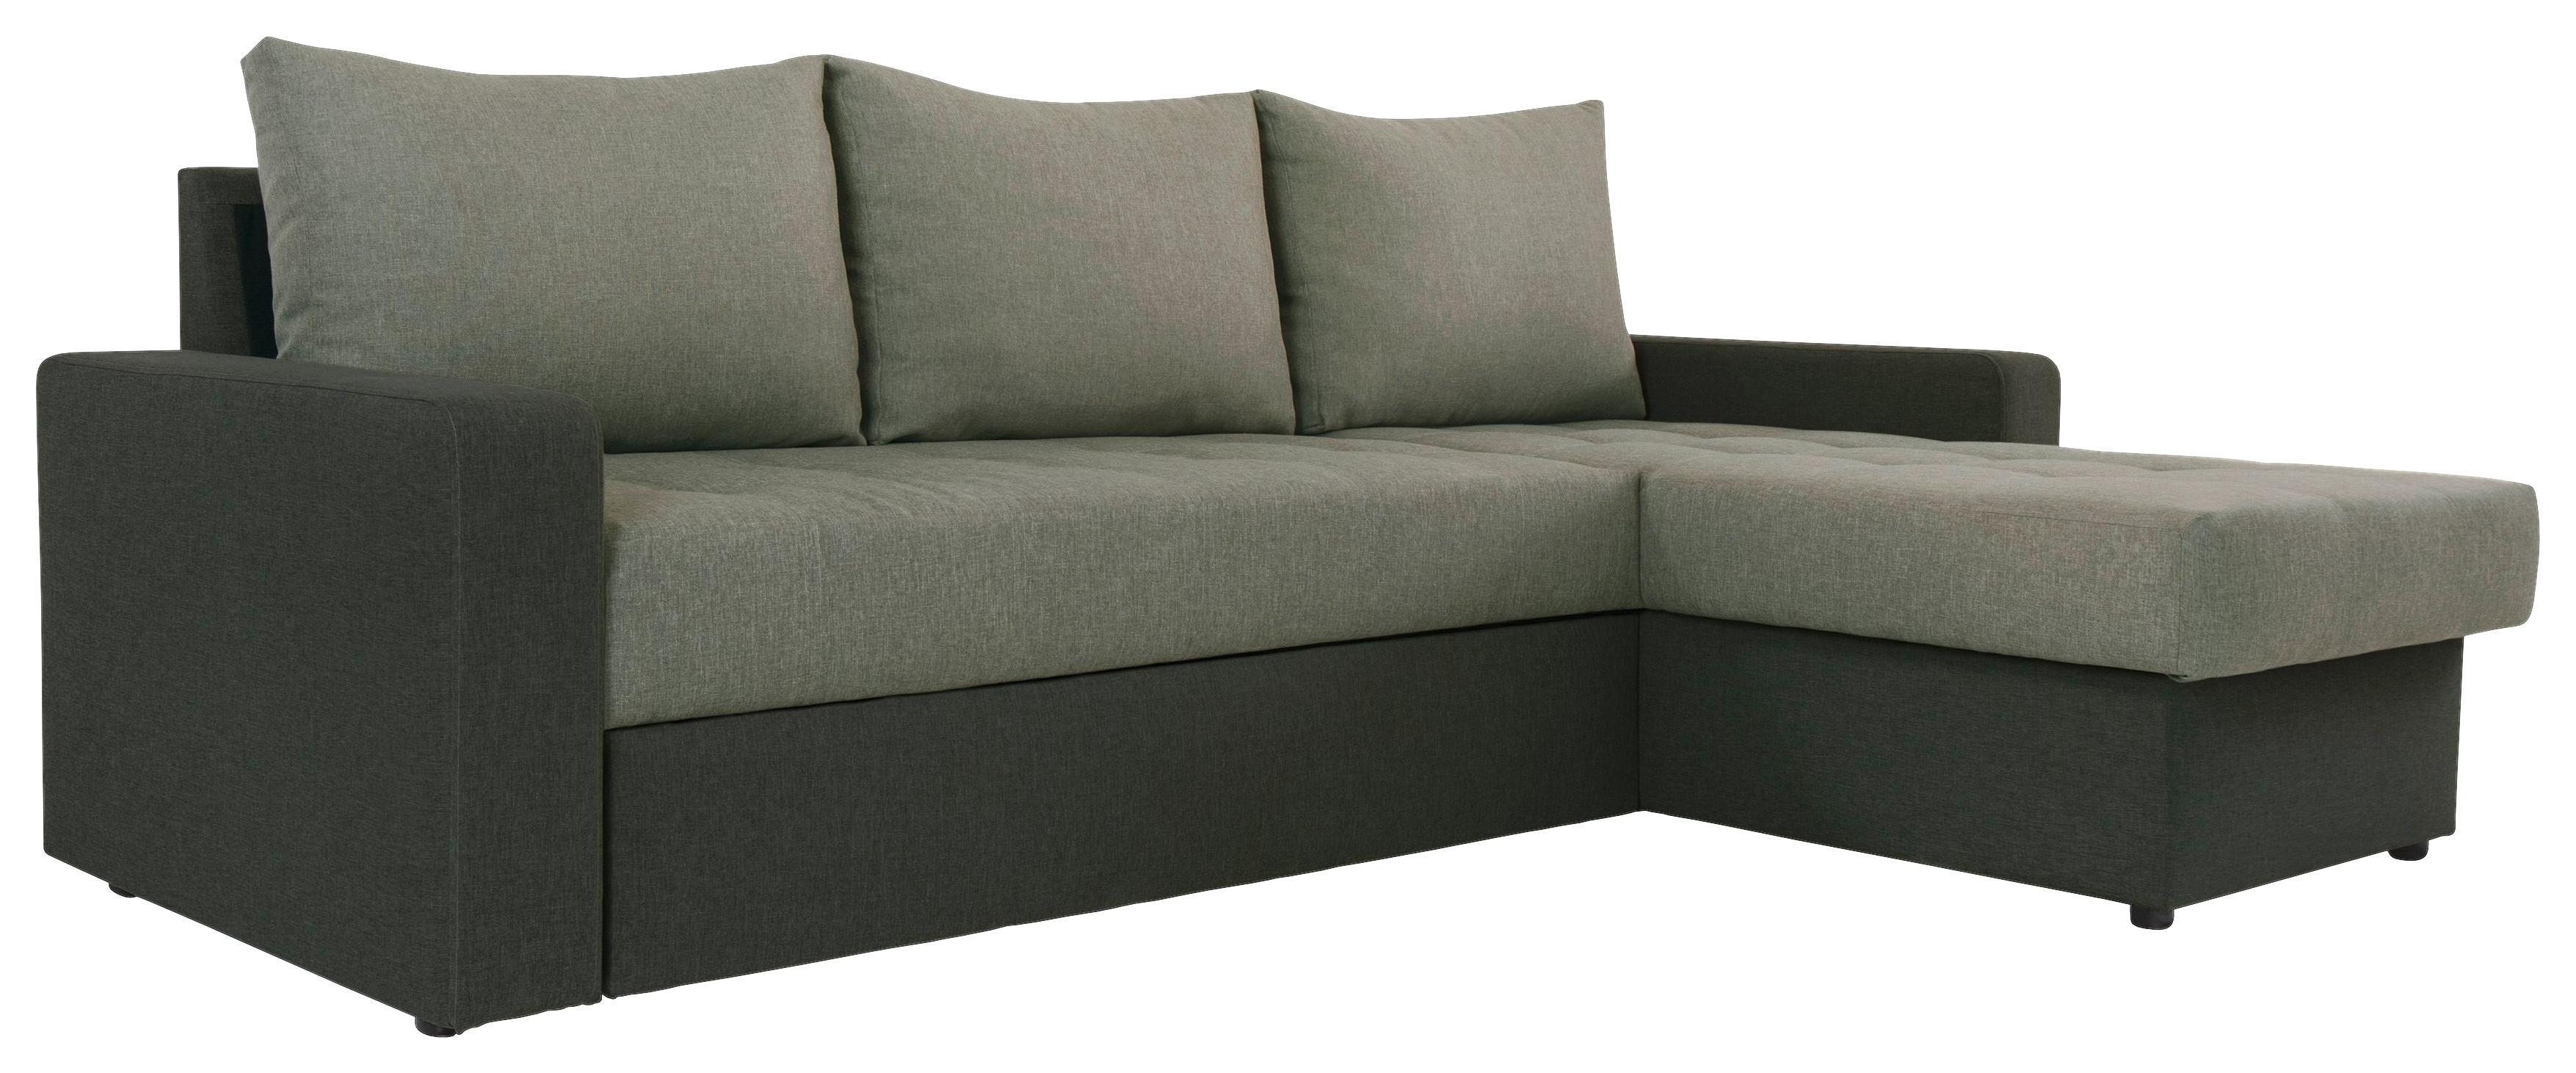 Sedežna Garnitura Atlanta, Z Ležiščem - črna/zelena, Moderno, tekstil (230/160cm) - Modern Living